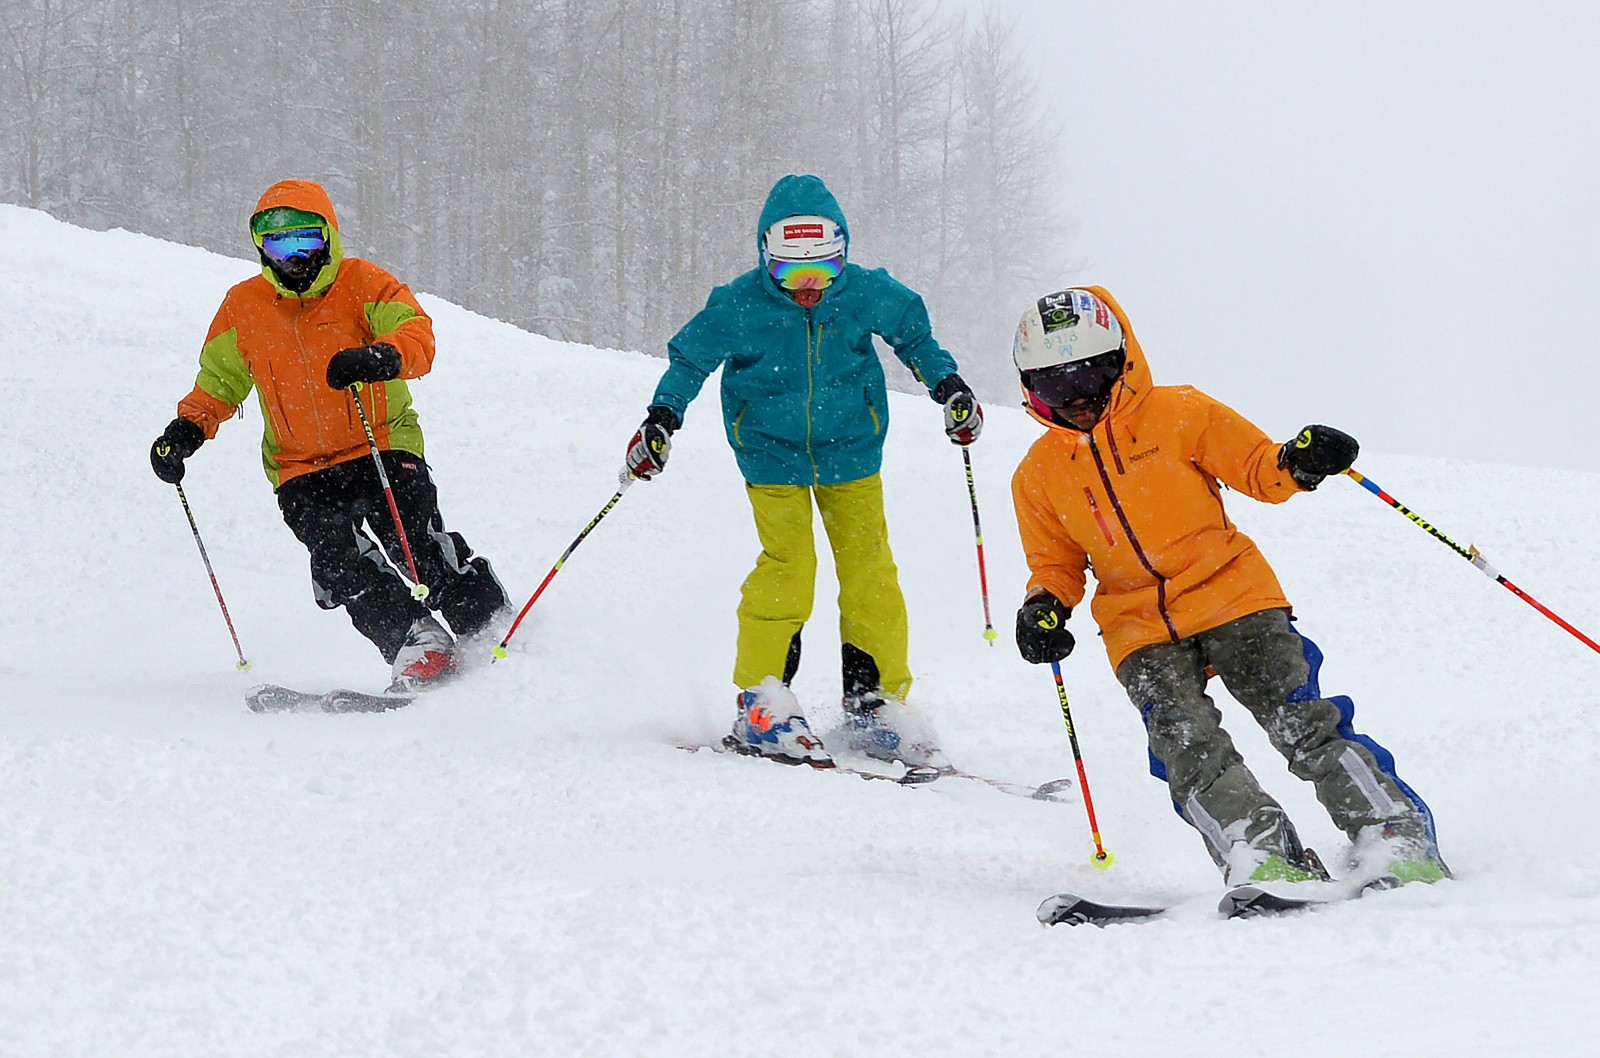 Skiing with Family HORIZONTALjpg